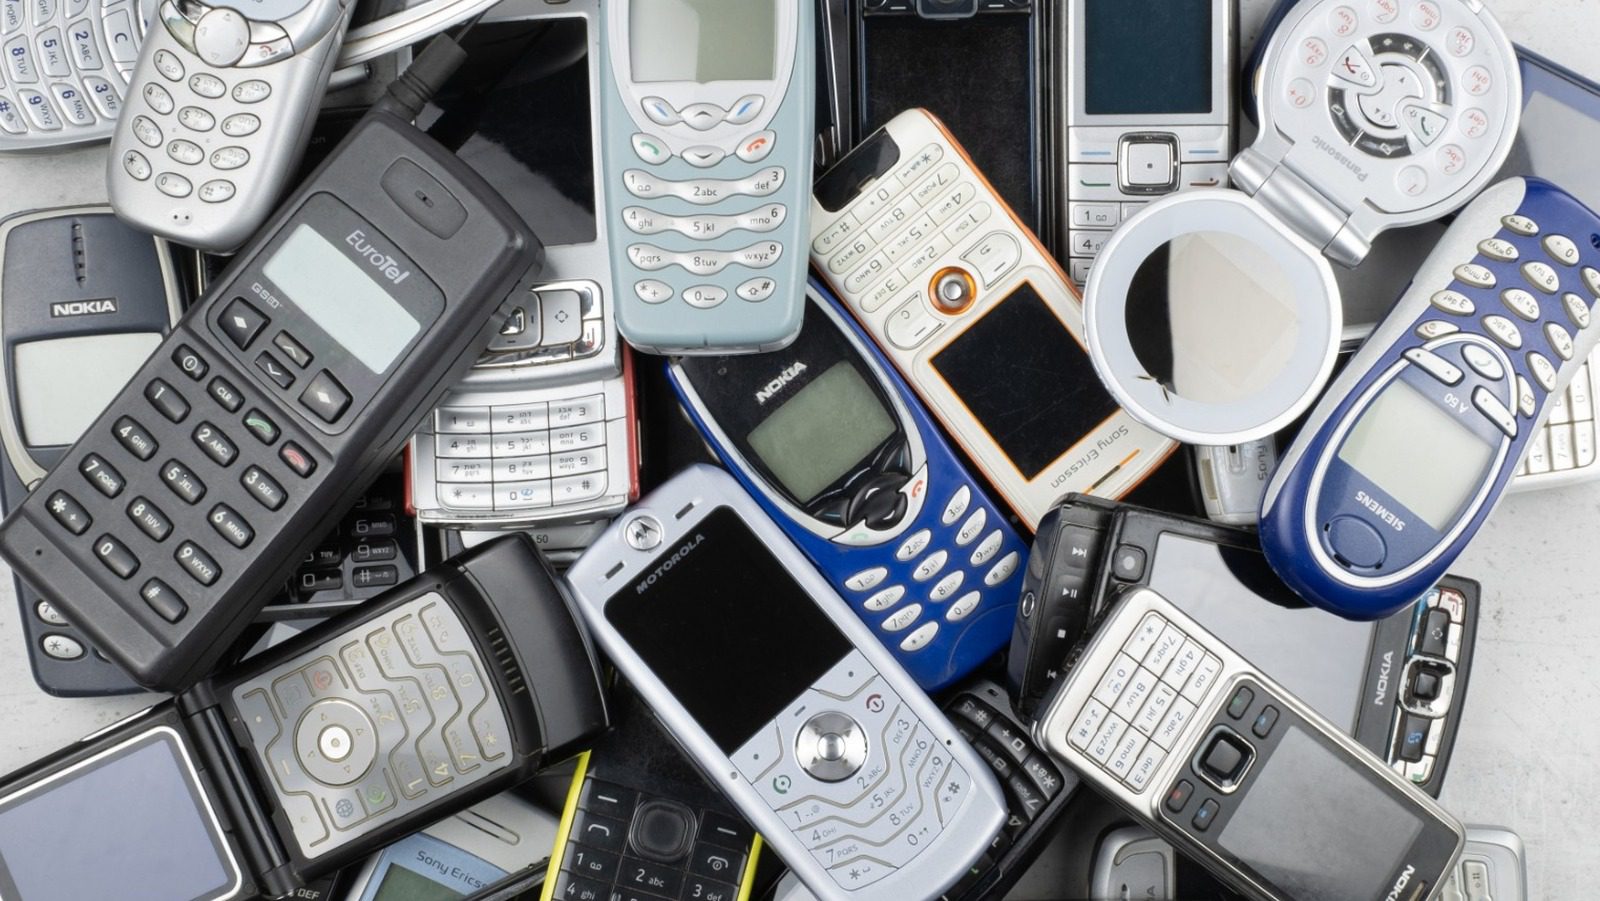 2000’lerden Hatırlayamayabileceğiniz 12 Tuhaf Telefon